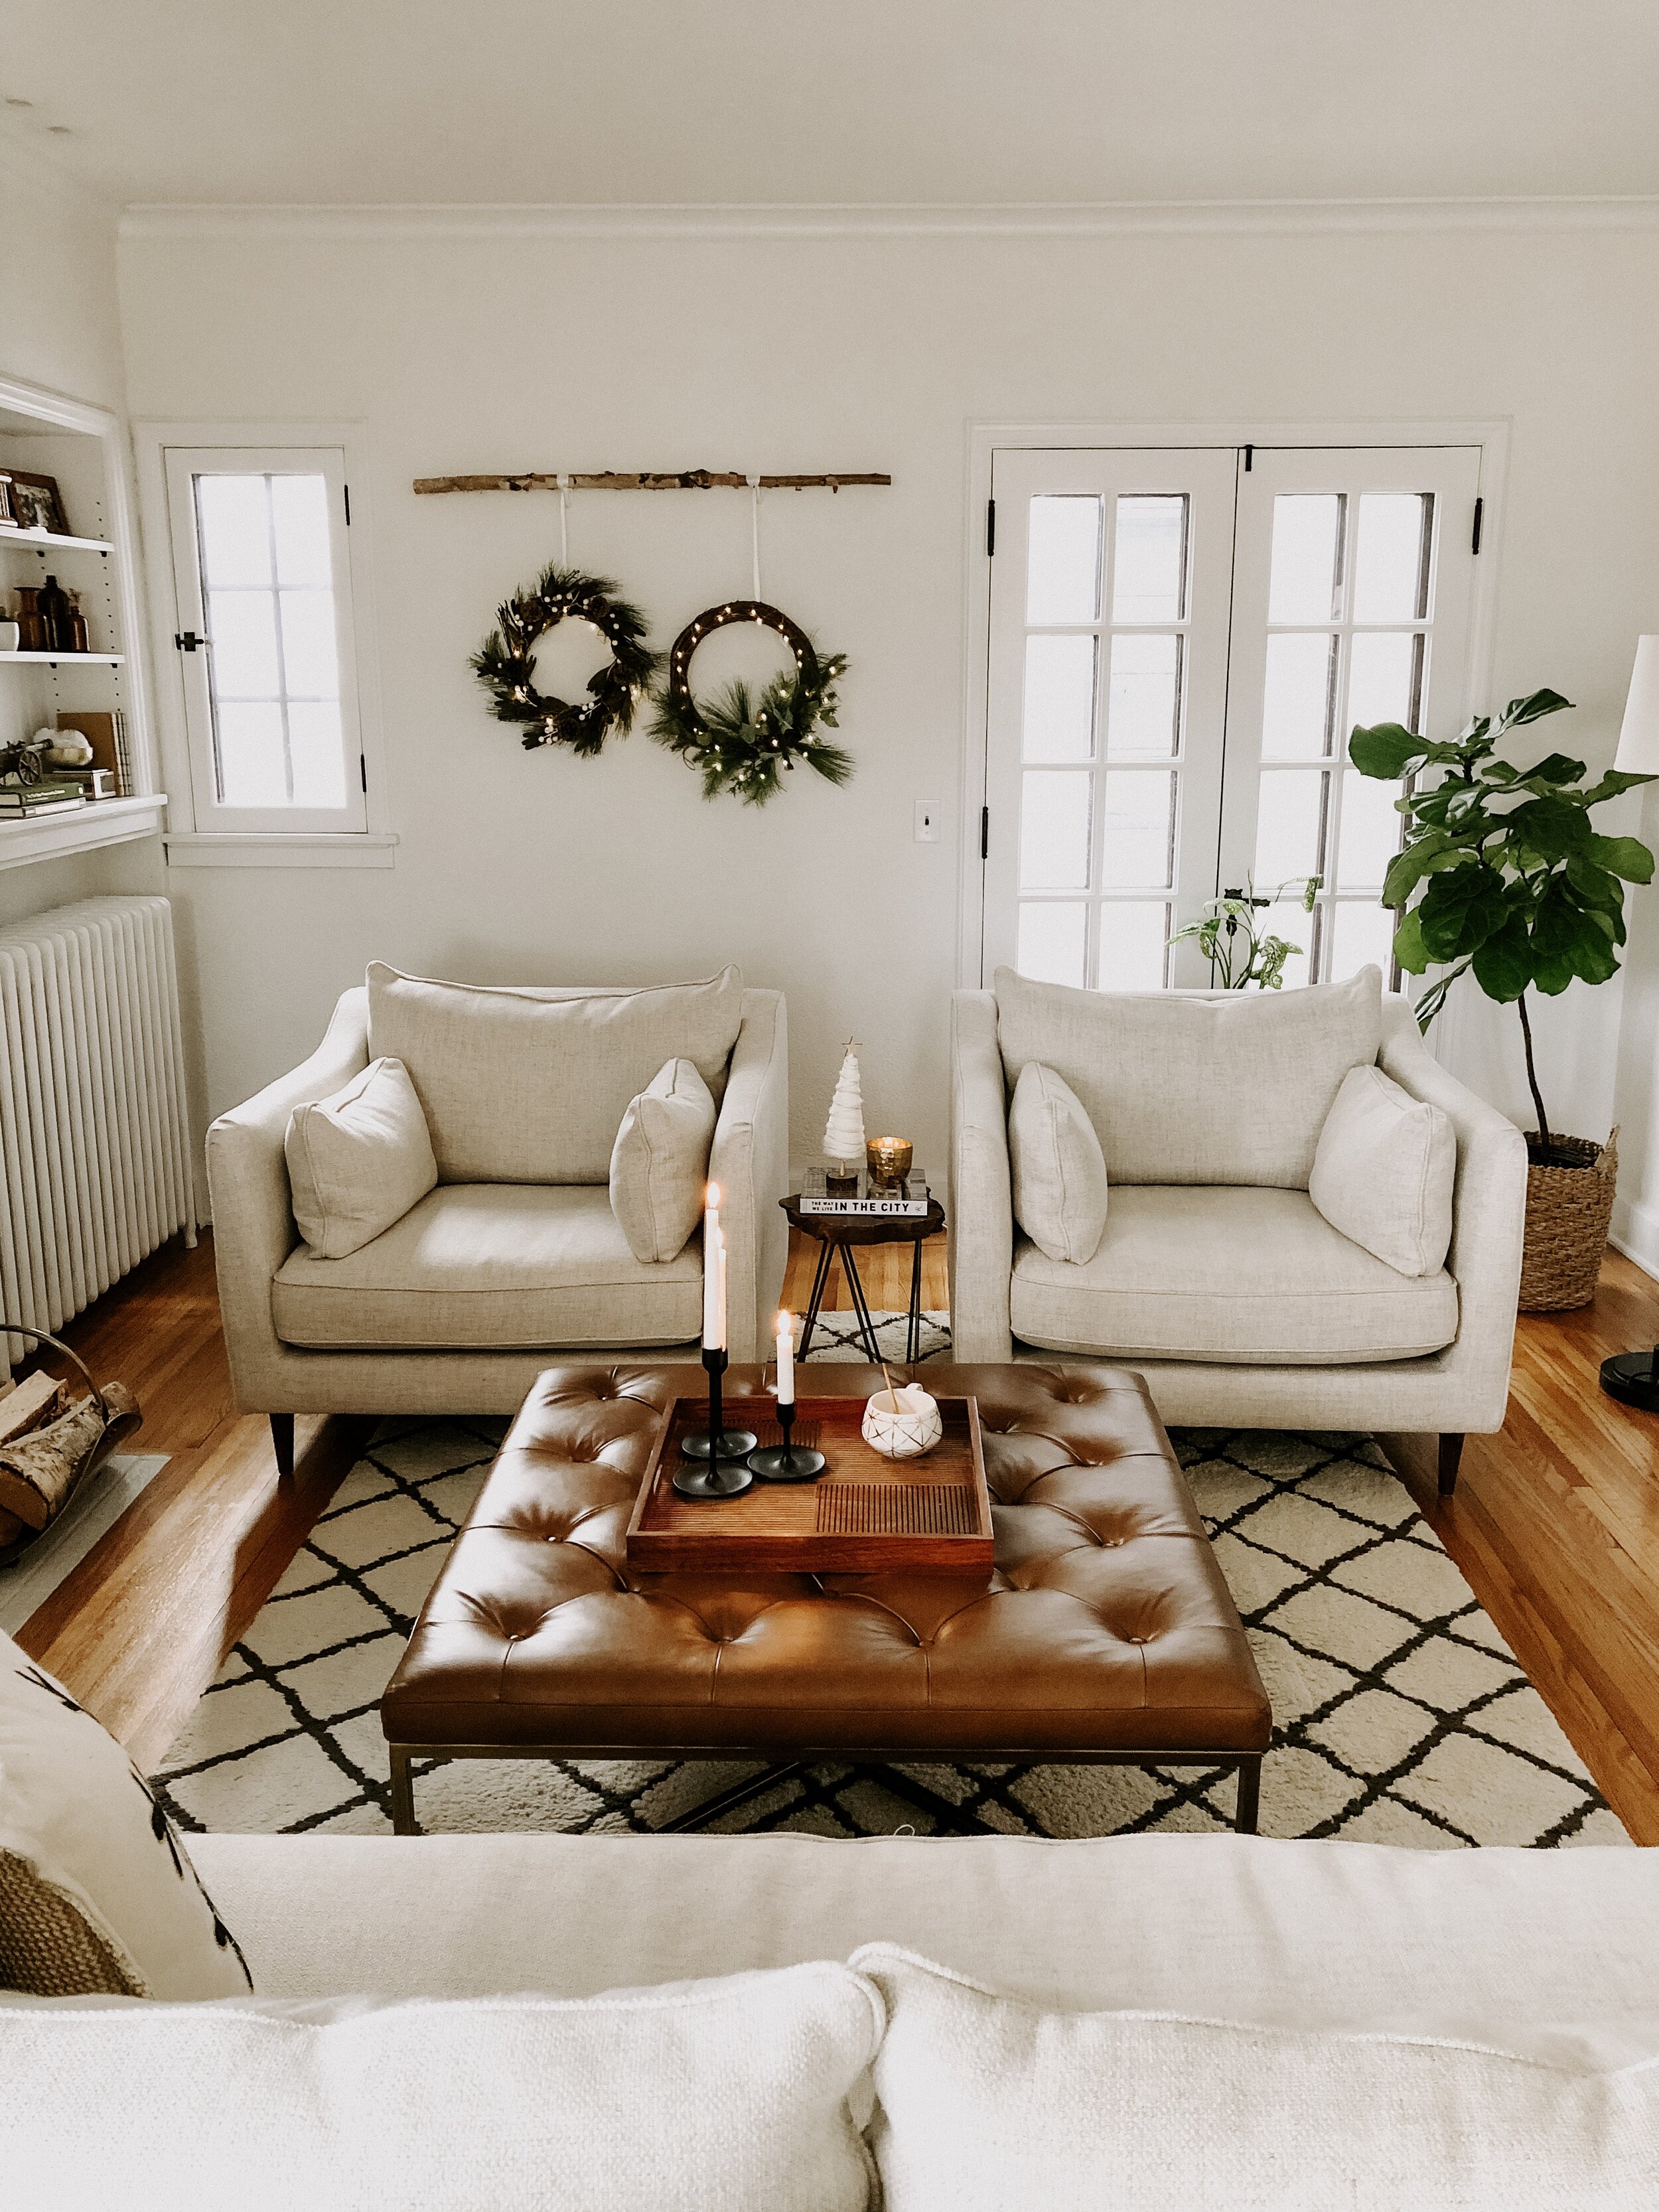 patticakewagner living room makeover